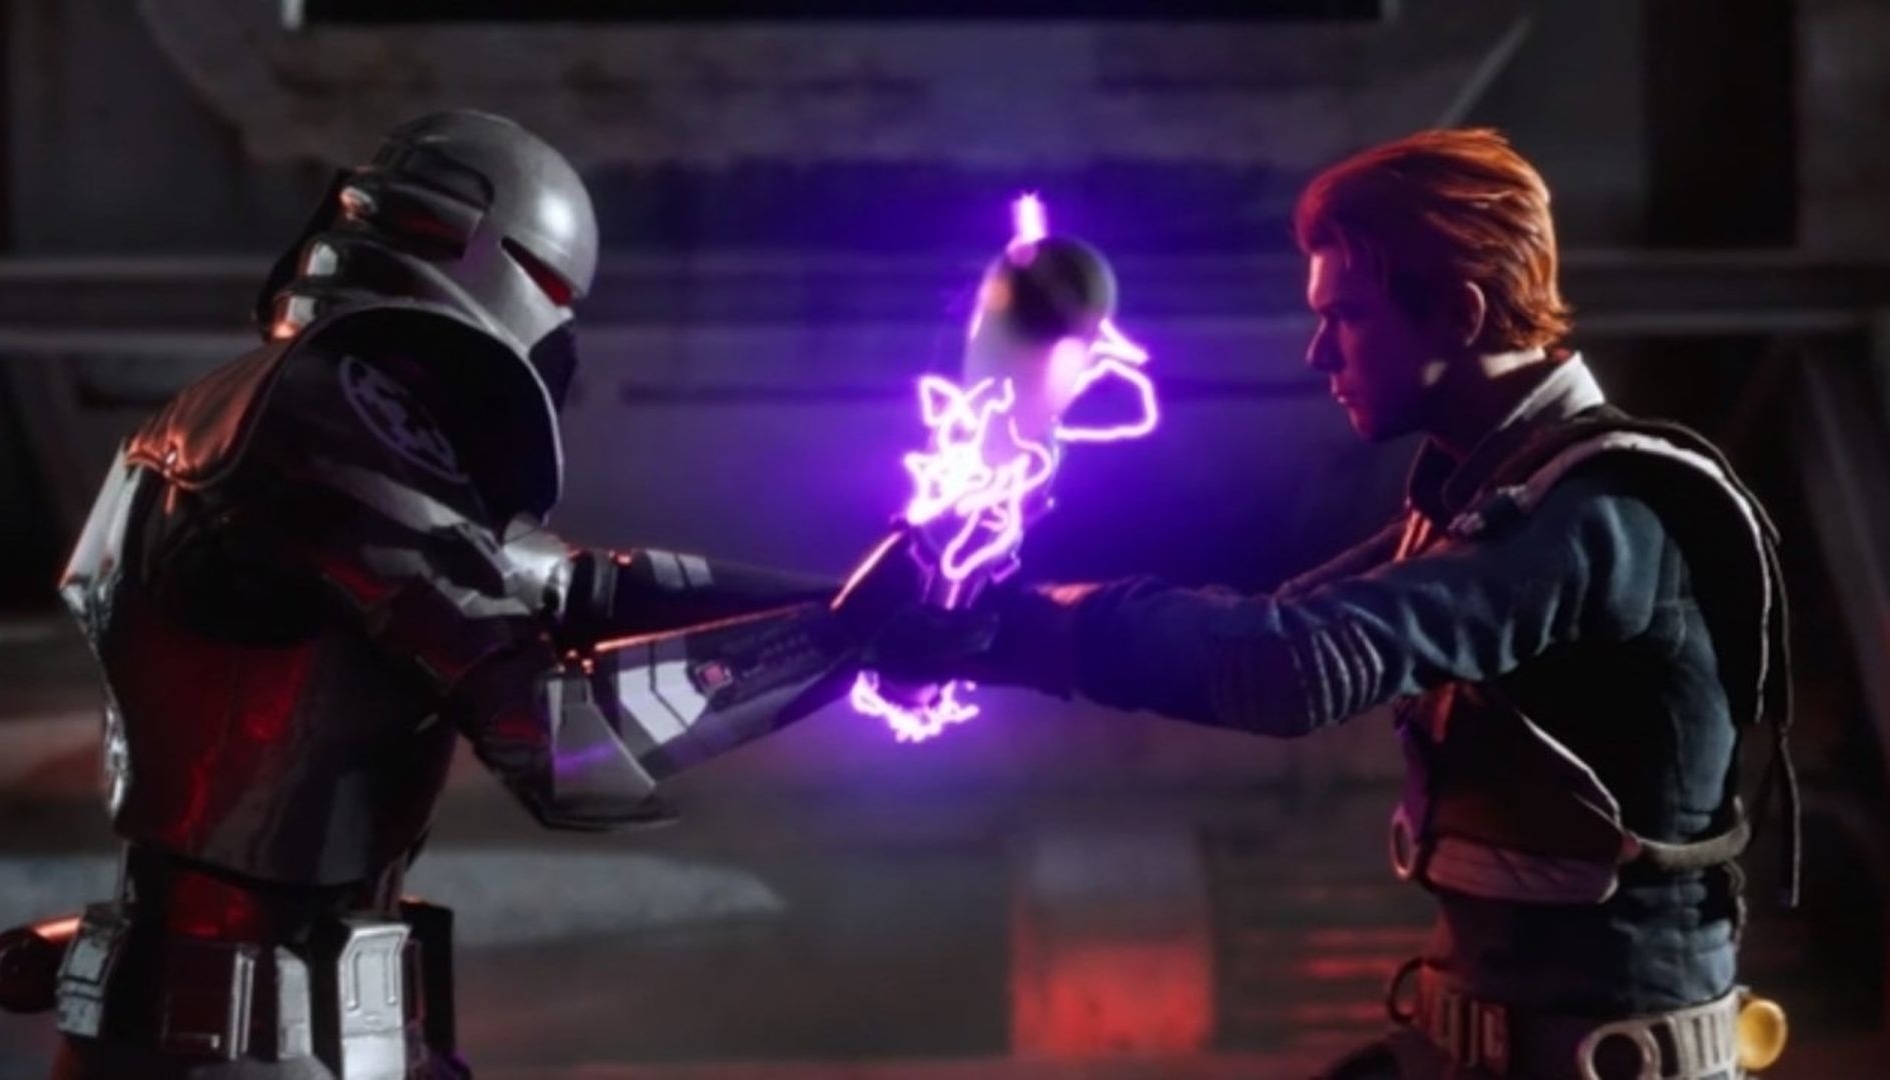 Star Wars Jedi: Fallen Order, data e ora del gameplay reveal previsto per l’EA Play 2019